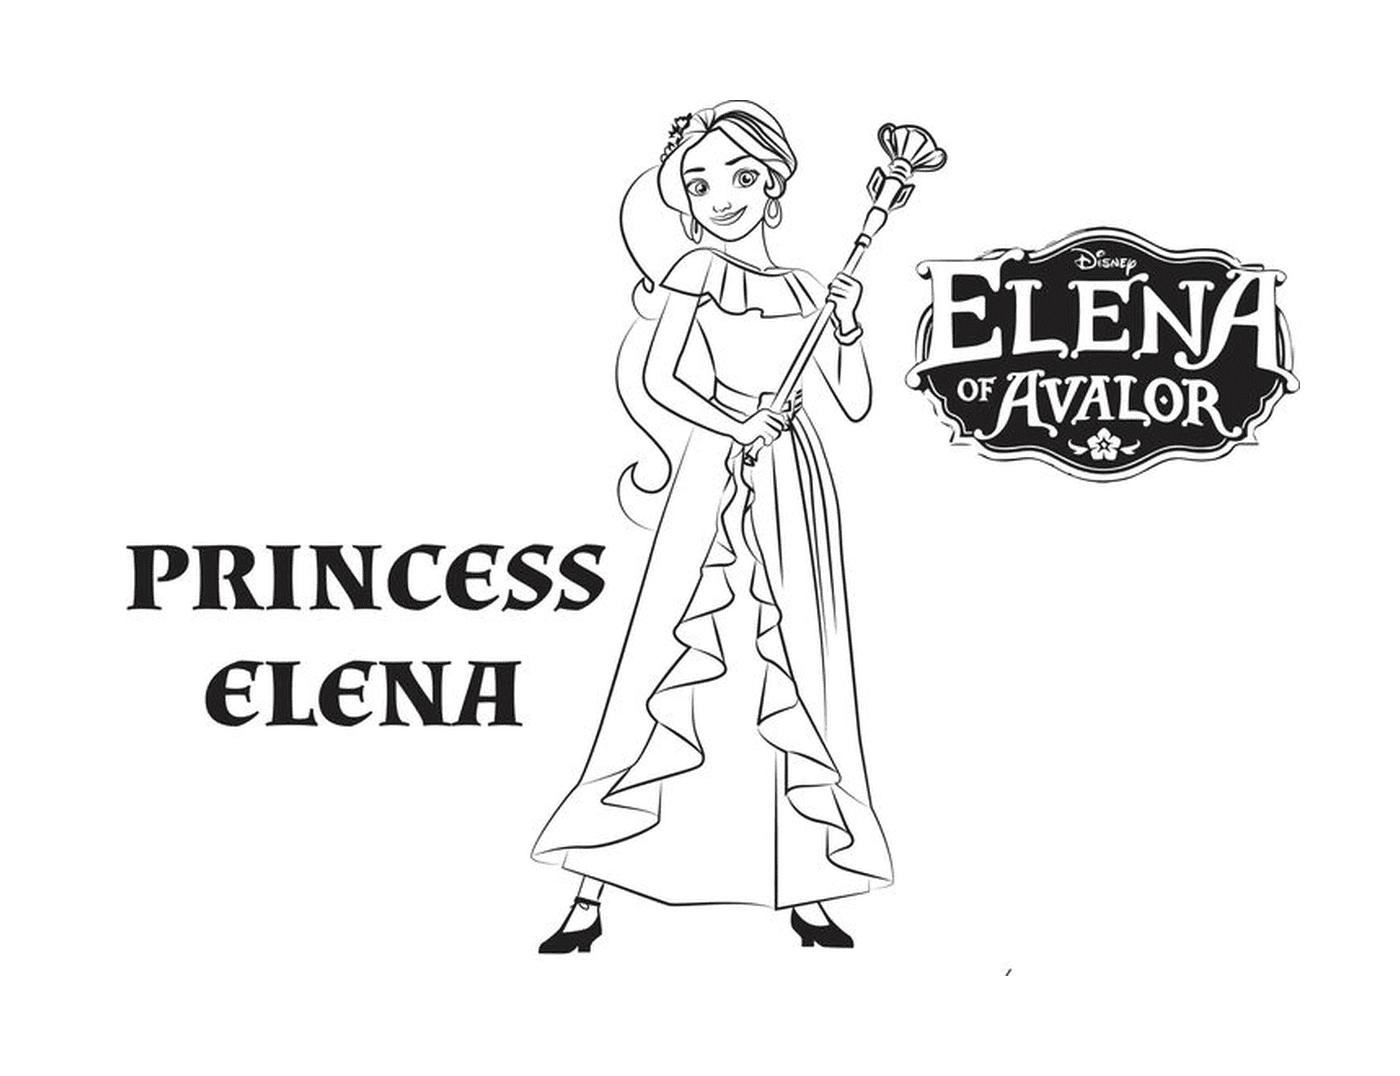  Princesa Elena de Disney Avalor 